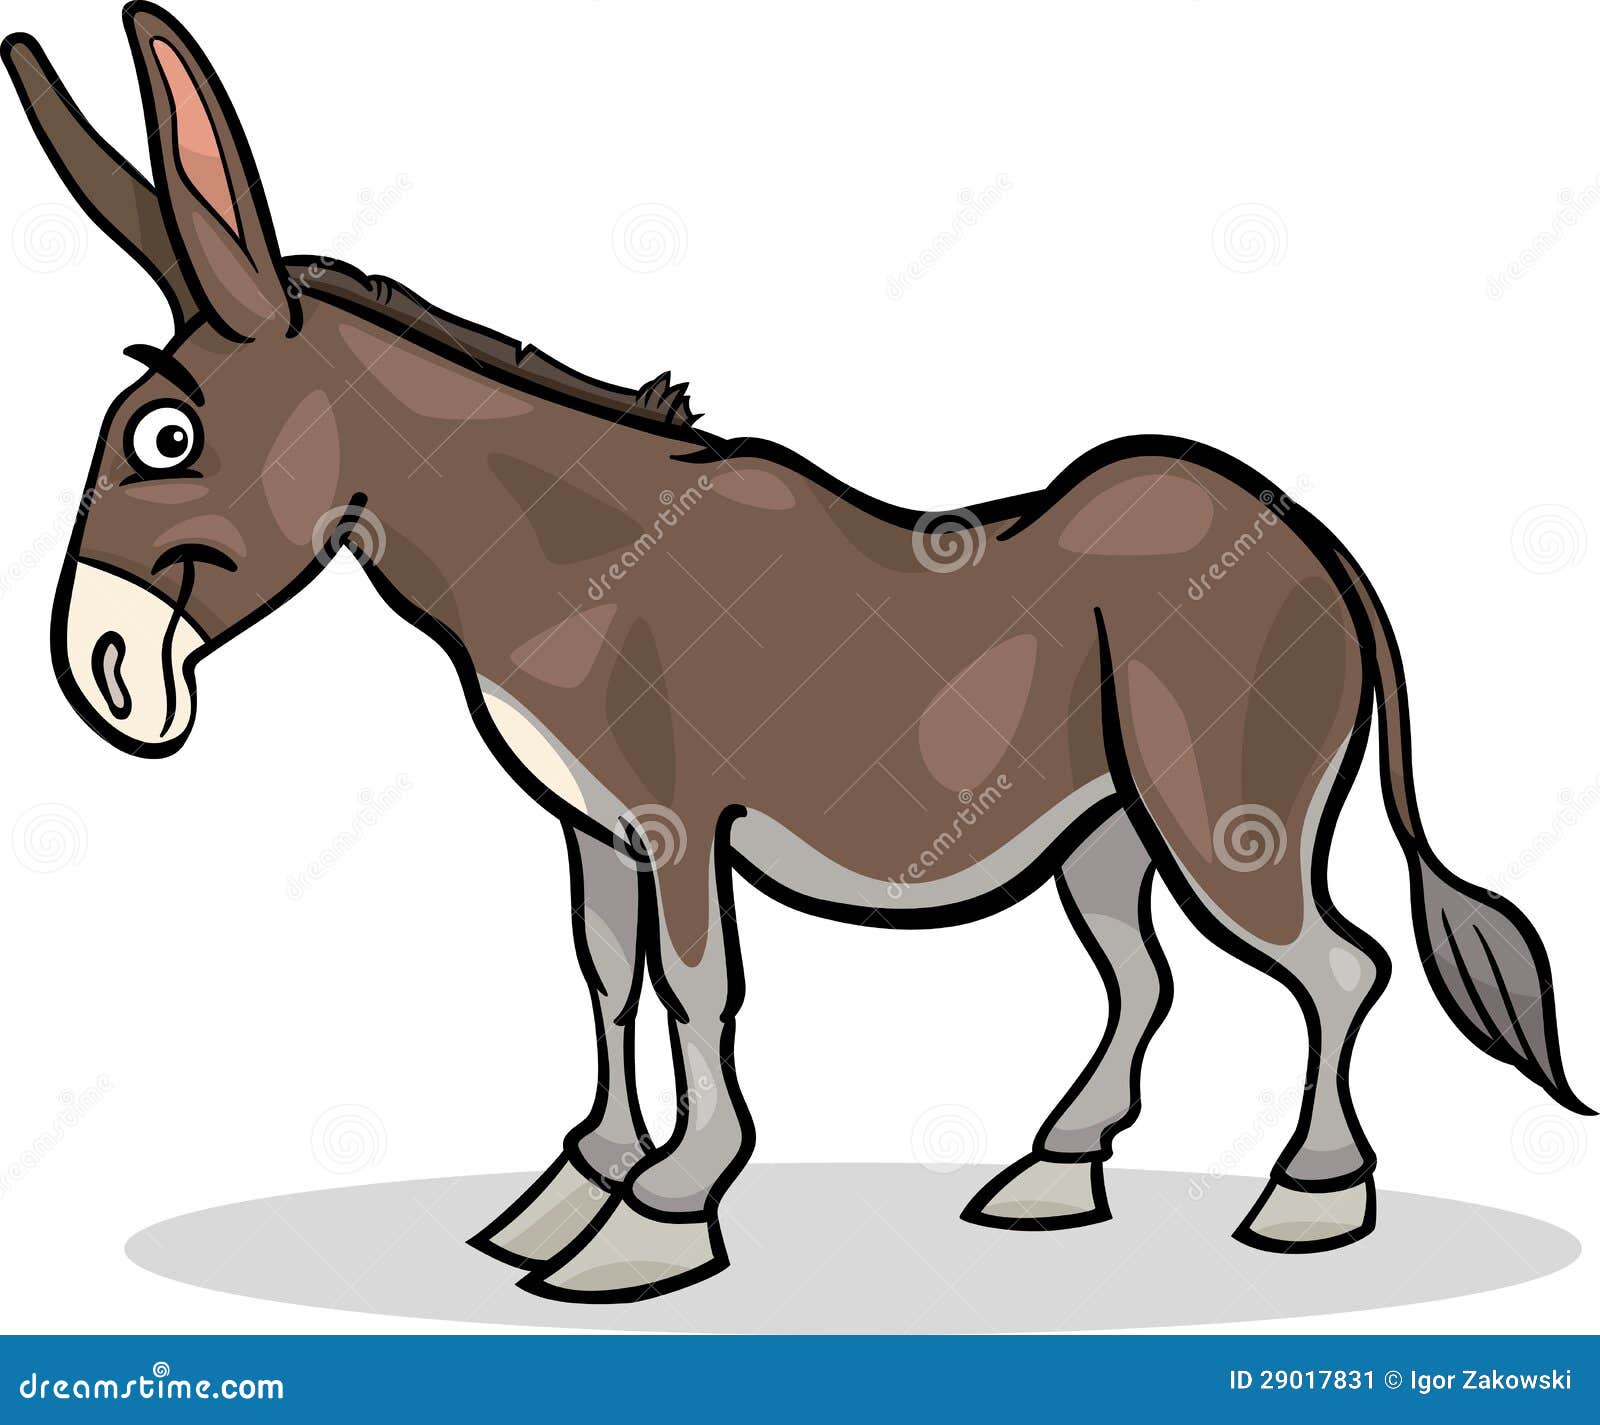 funny donkey clipart - photo #49